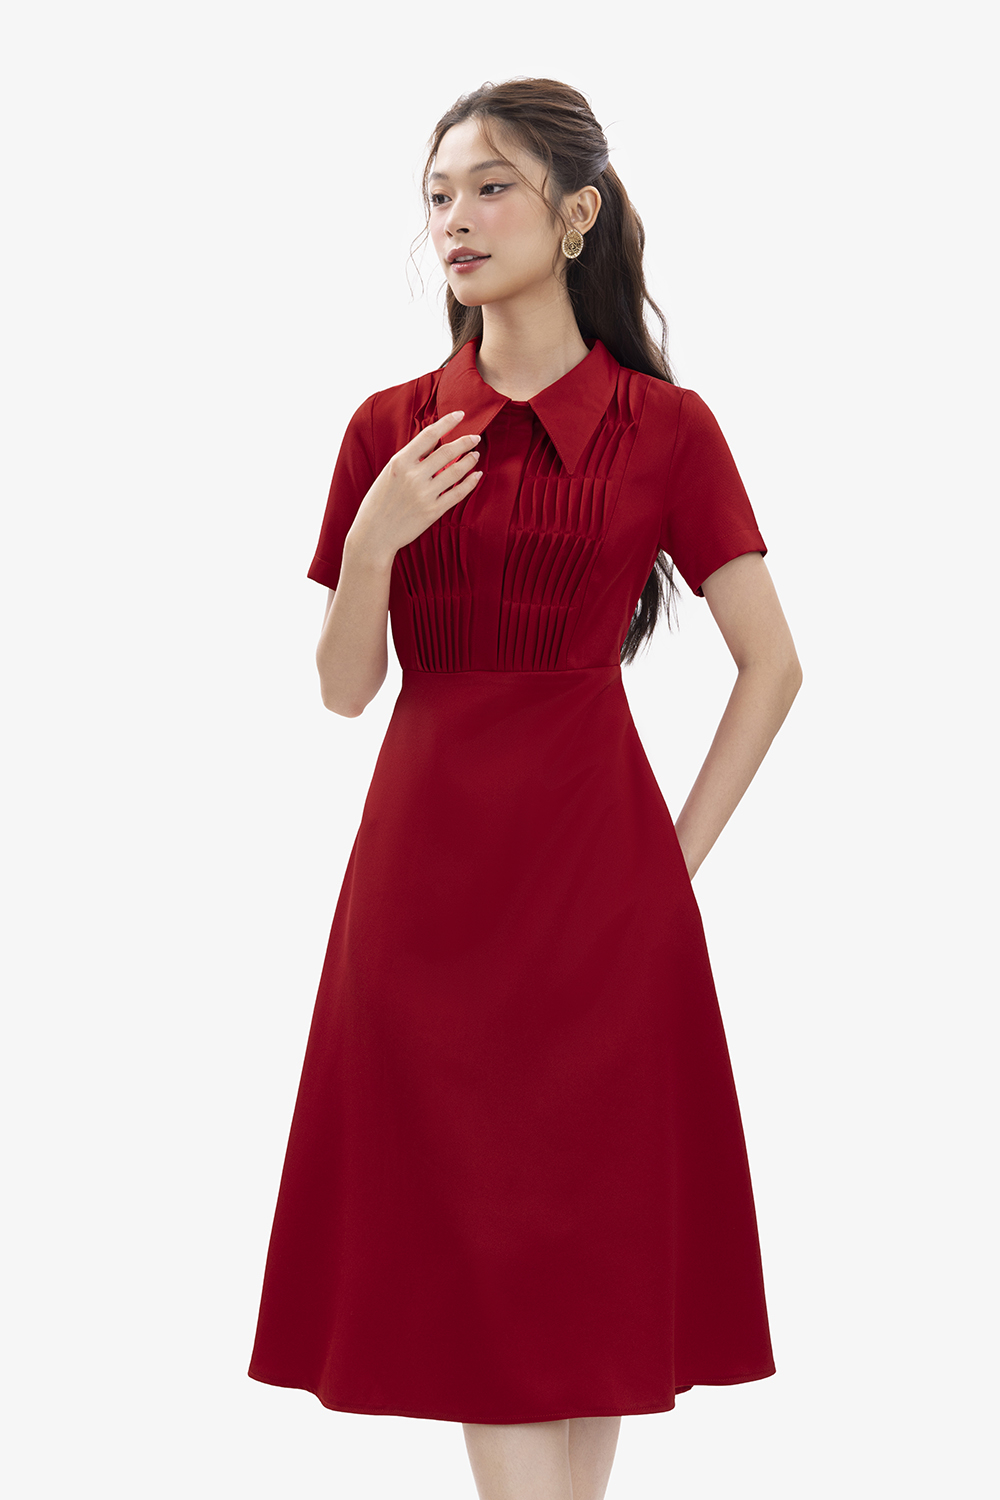 Mẫu váy đầm xòe dự tiệc cưới màu đỏ cô vuông đính hạt ngọc sang trọng thanh  lịch có bigsize mẫu mới giá rẻ đẹp hót hít , váy đầm đi chơi